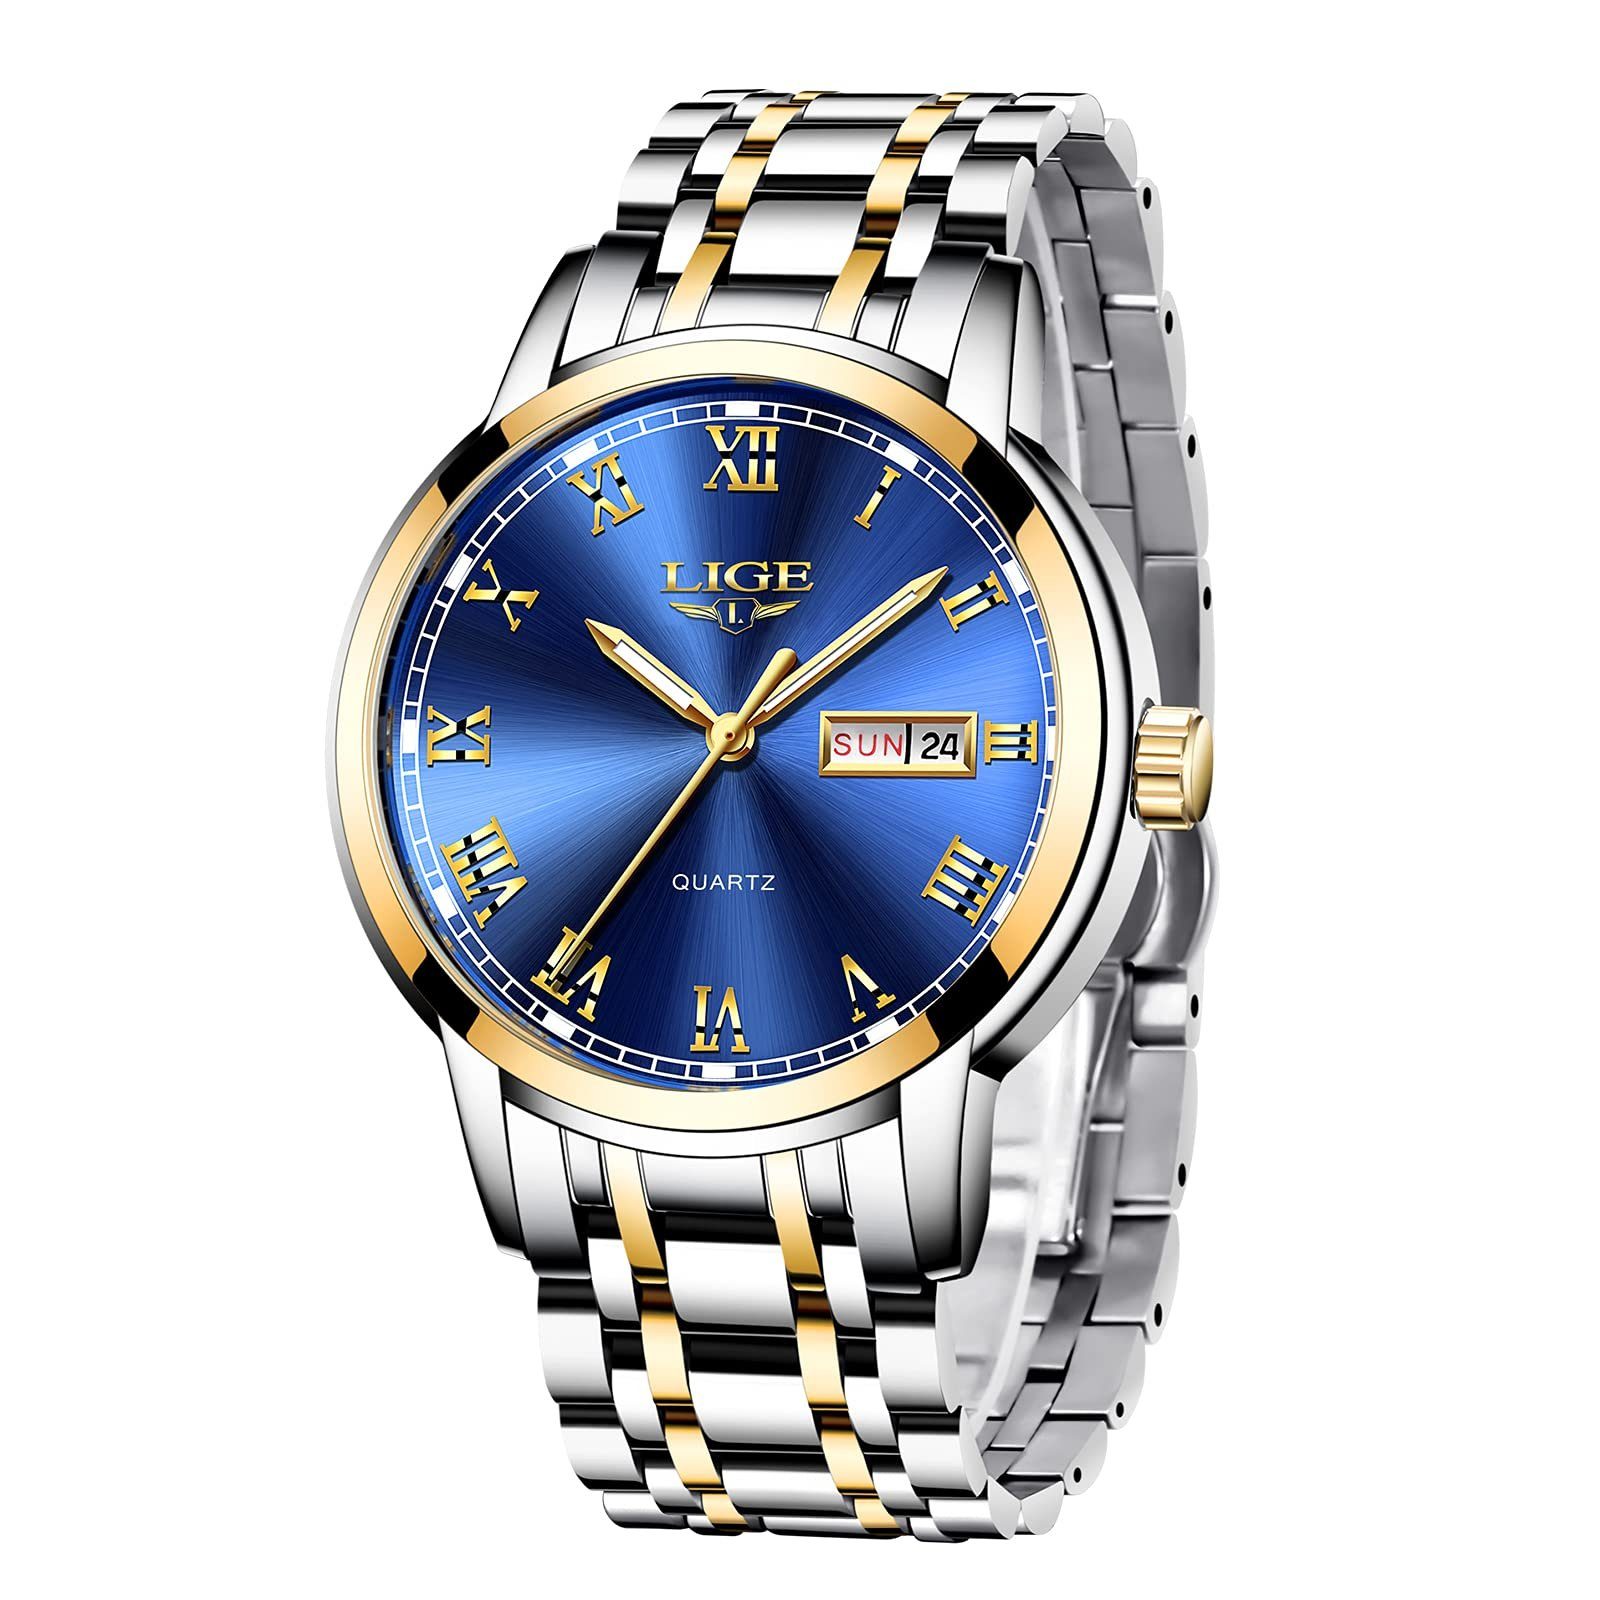 GelldG Uhr Mode Sportuhr Wasserdicht analog Quarz Uhren mit Business Uhrenarmband Gold, Blau